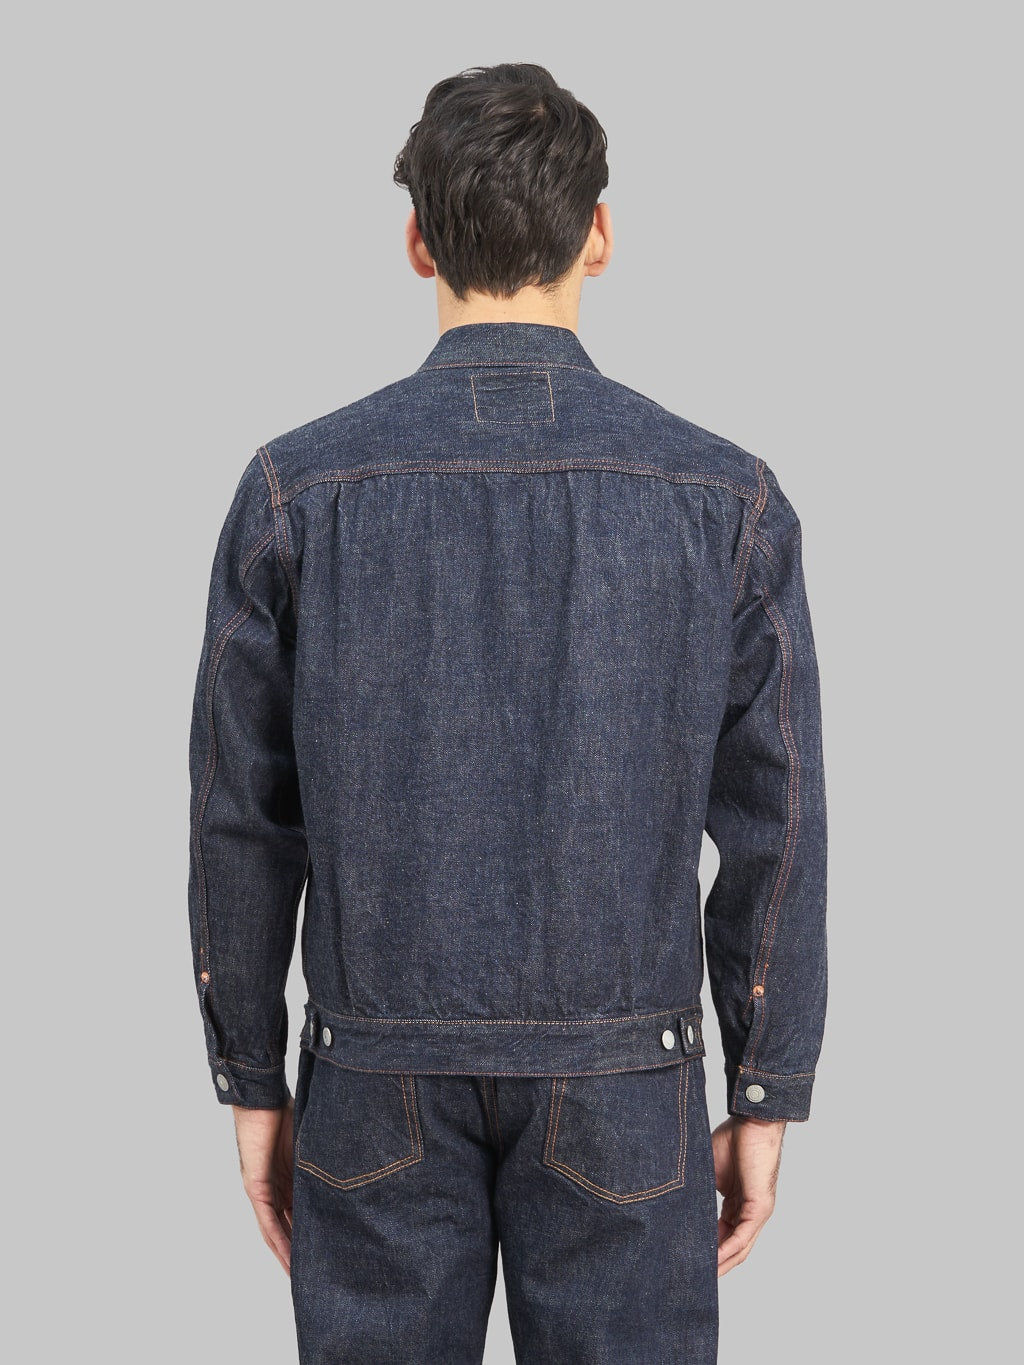 fullcount 2102 type 2 denim jacket selvedge model back fit